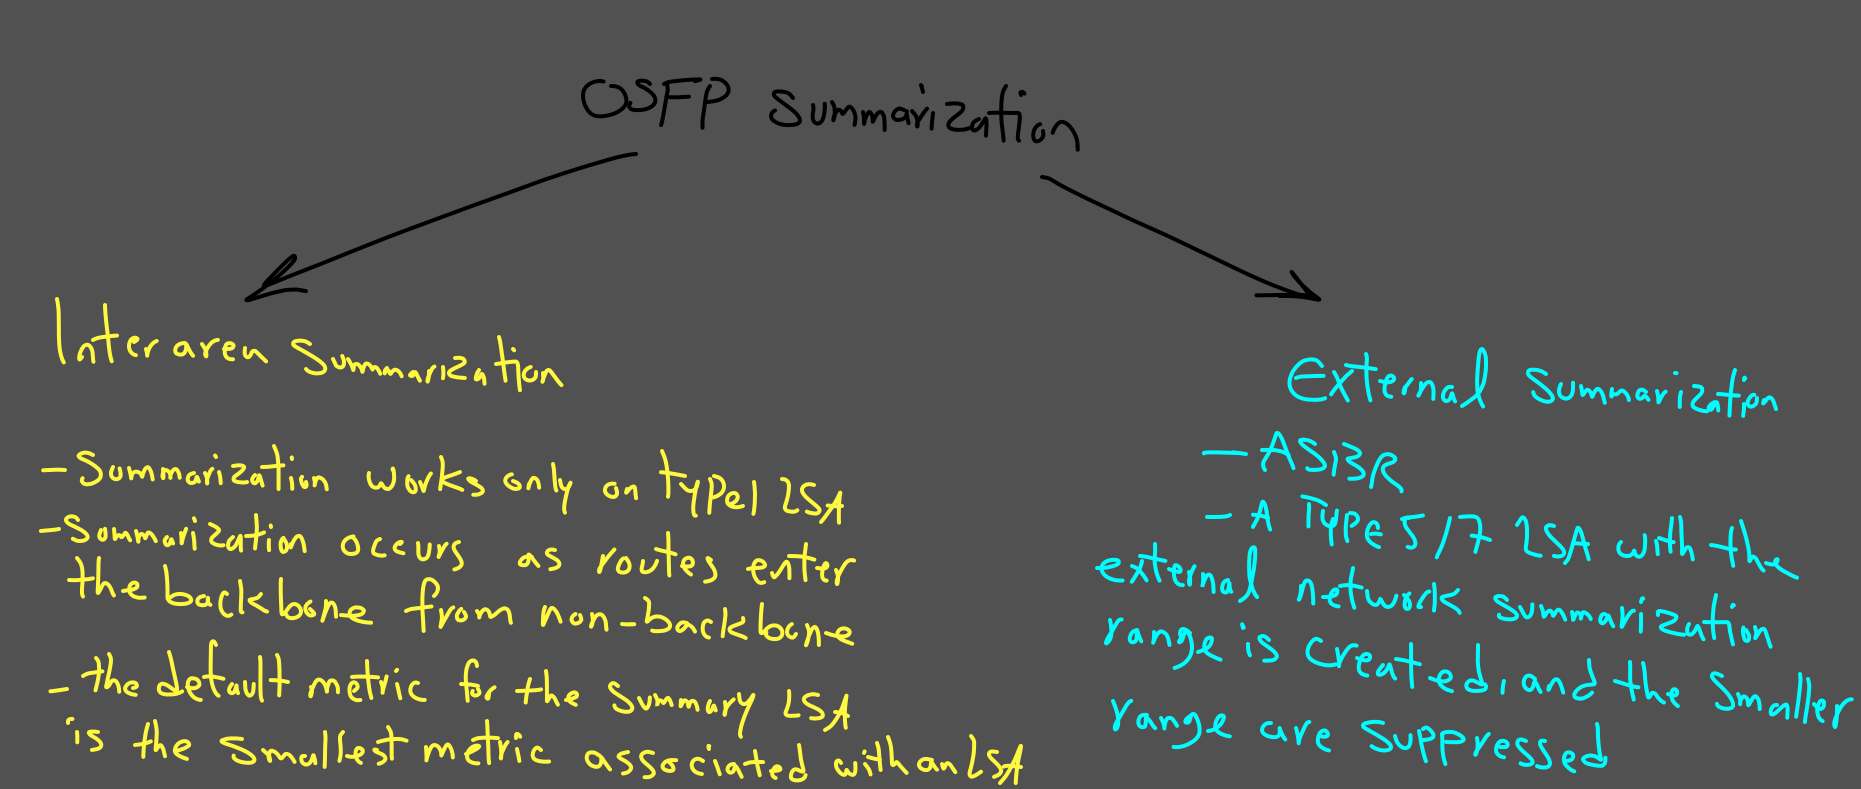 OSPF Summarization